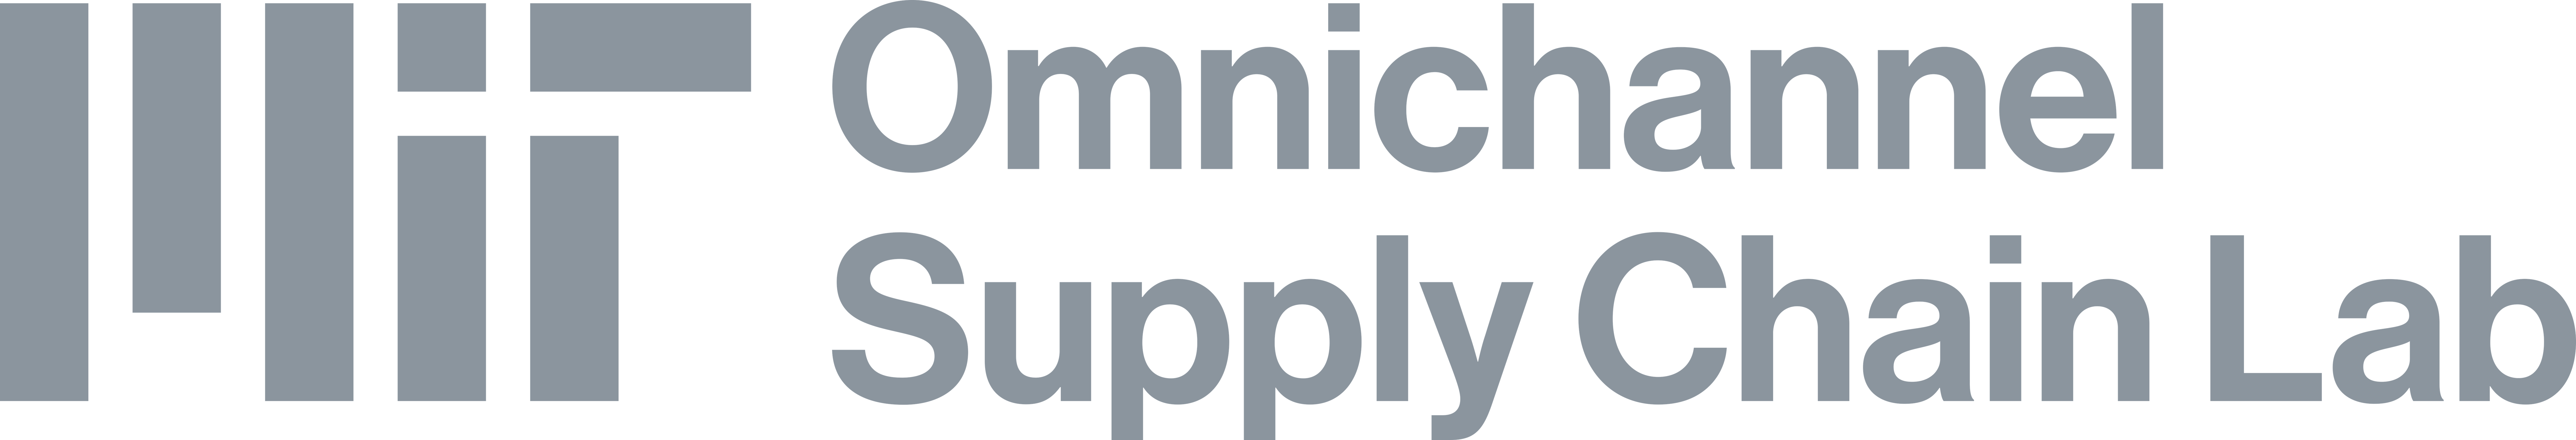 MIT Omnichannel Supply Chain Lab